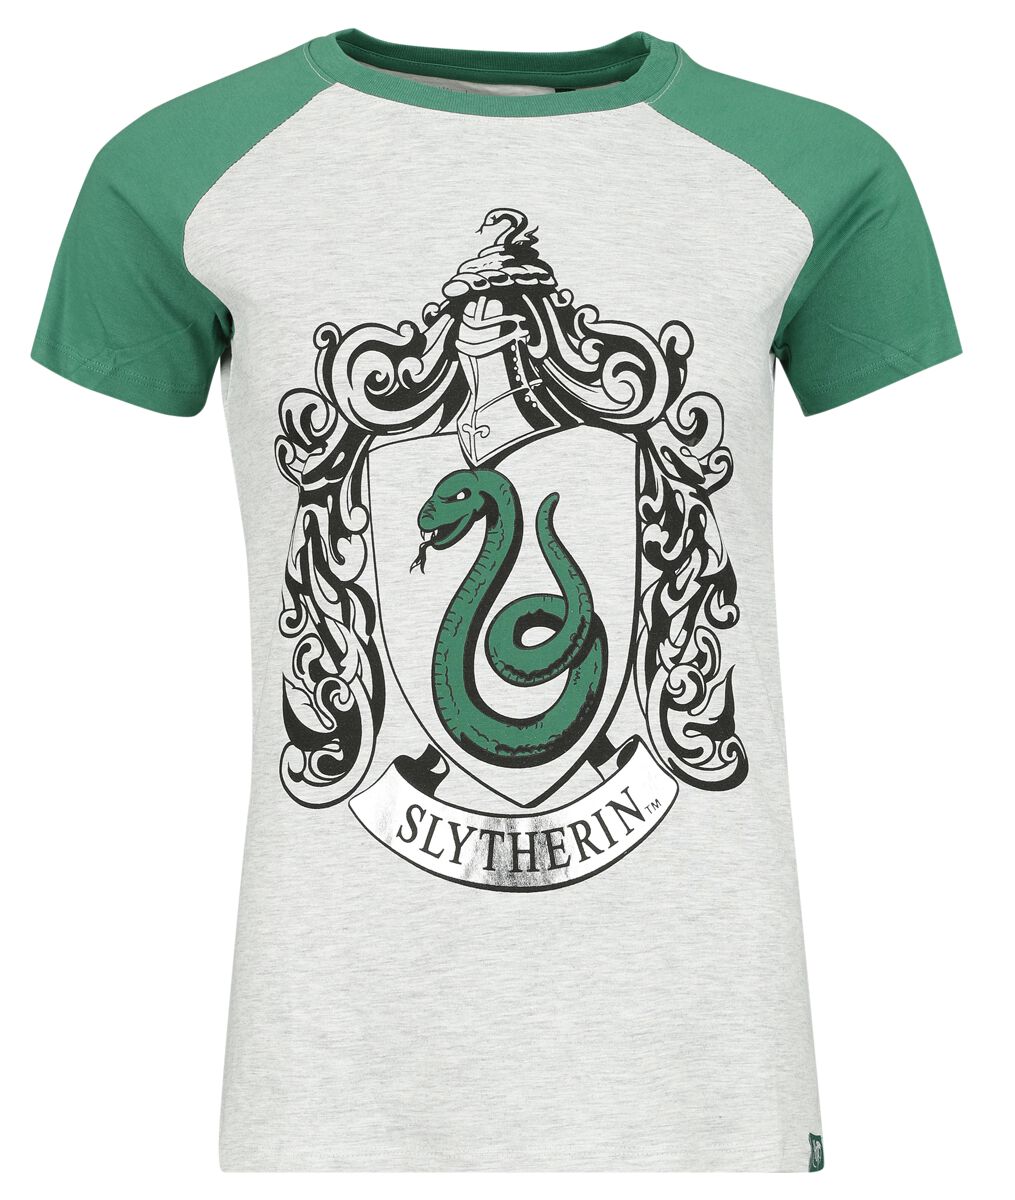 Harry Potter T-Shirt - Slytherin Silver - S bis XL - für Damen - Größe S - grün/grau  - Lizenzierter Fanartikel